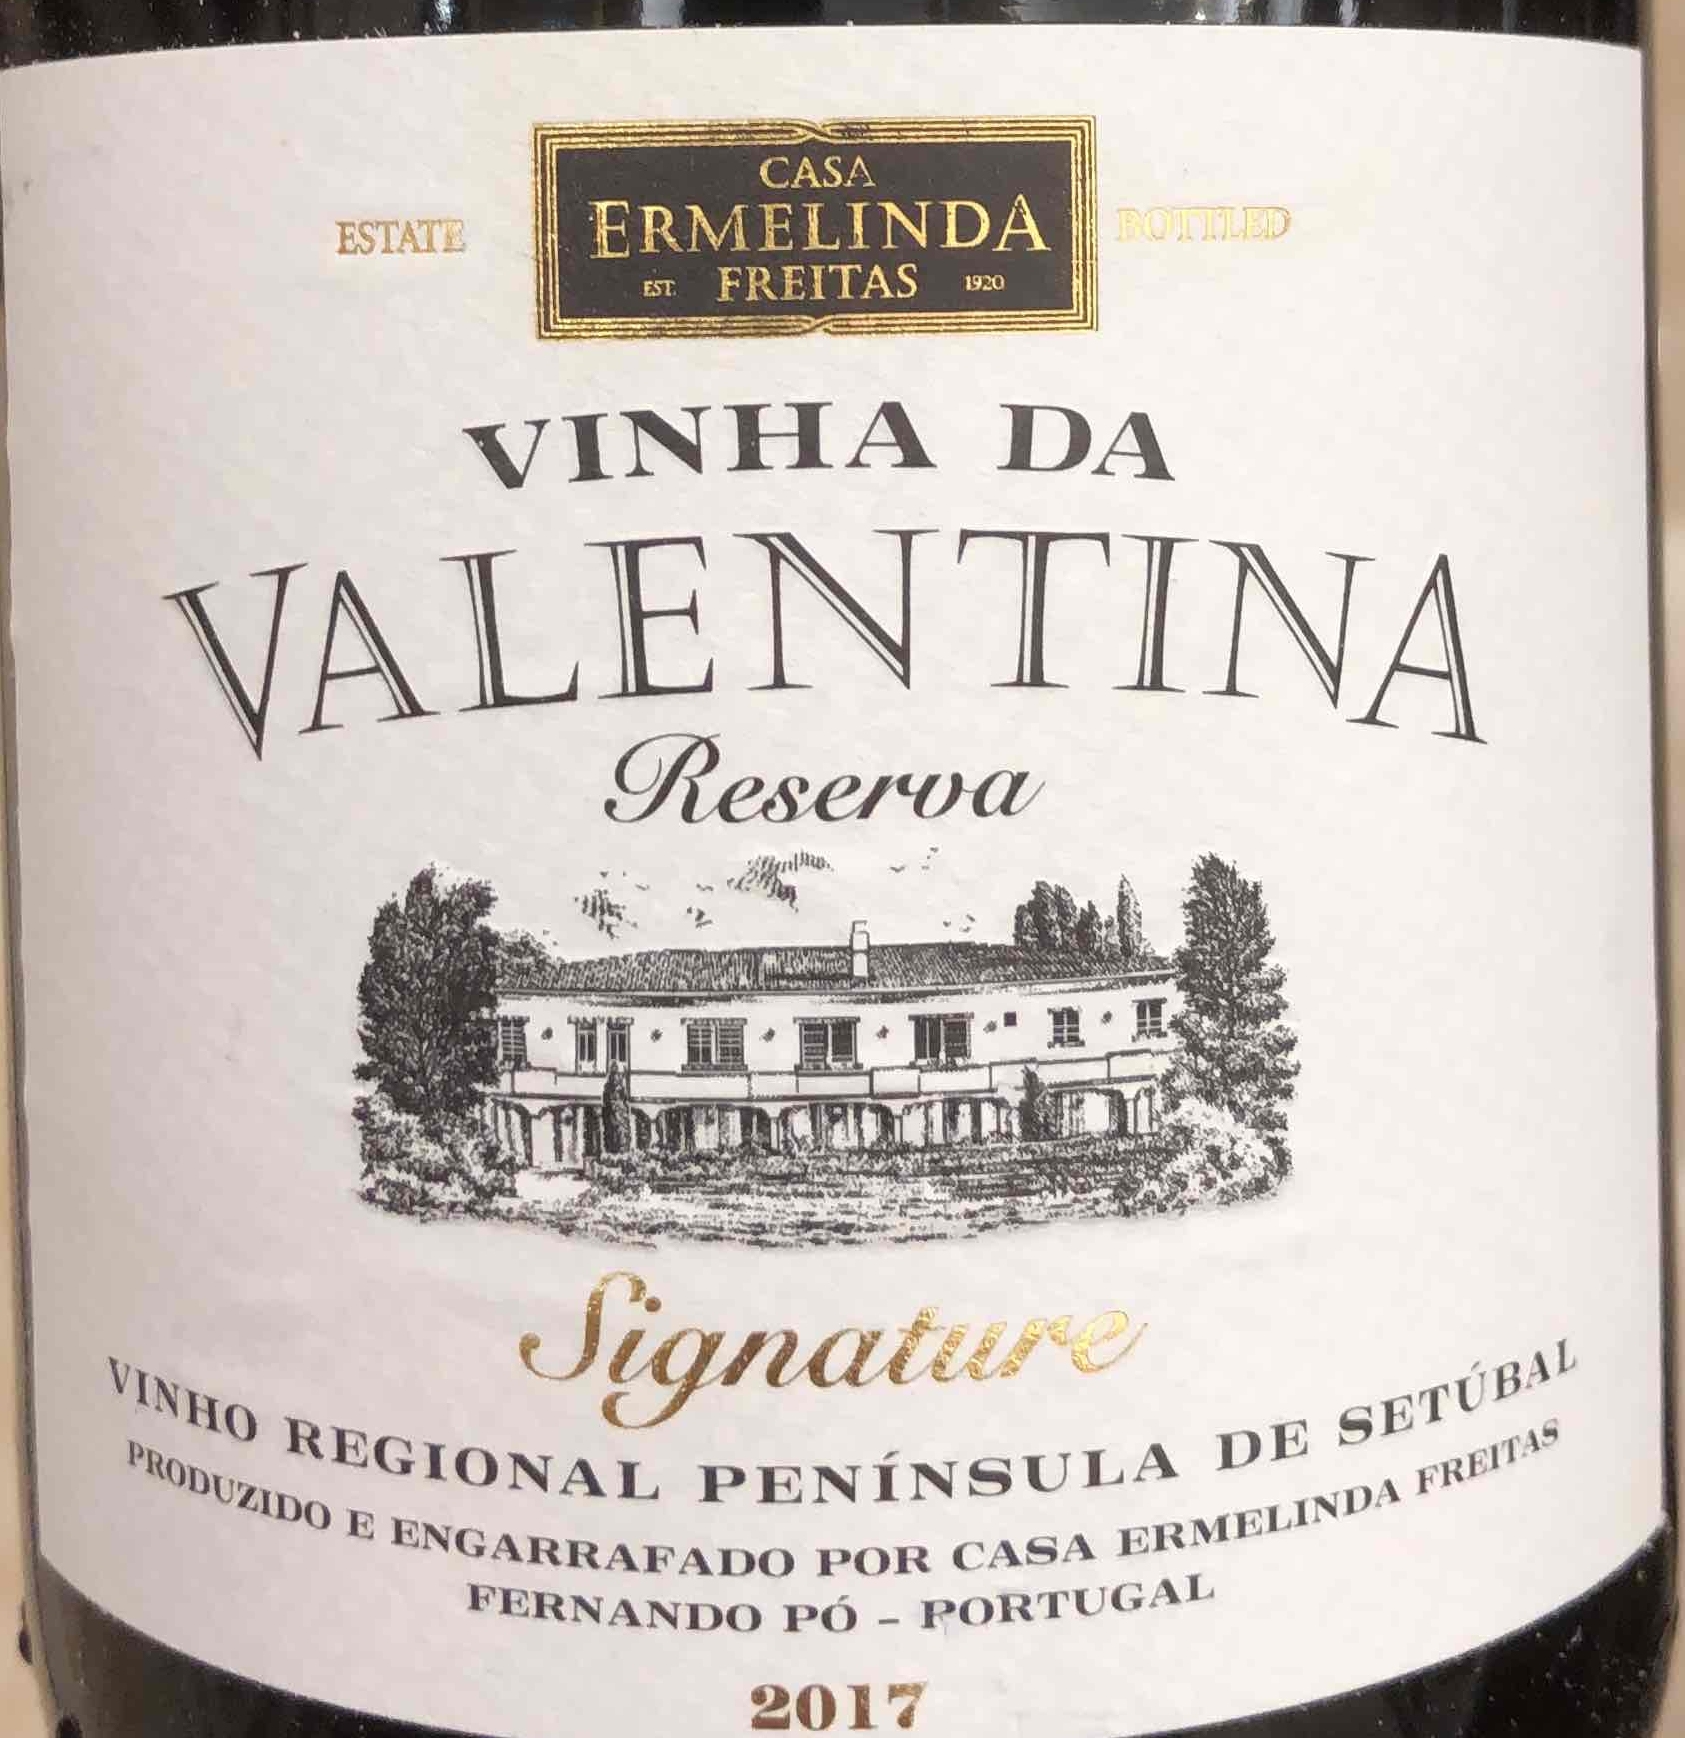 Reserva Valentina Setubal, da Signature Vinha Freitas Ermelinda Peninsula Casa de Tinto, Portugal-埃尔梅琳达·弗雷塔斯之家酒庄葡萄酒-价格-评价-中文名-红酒世界网